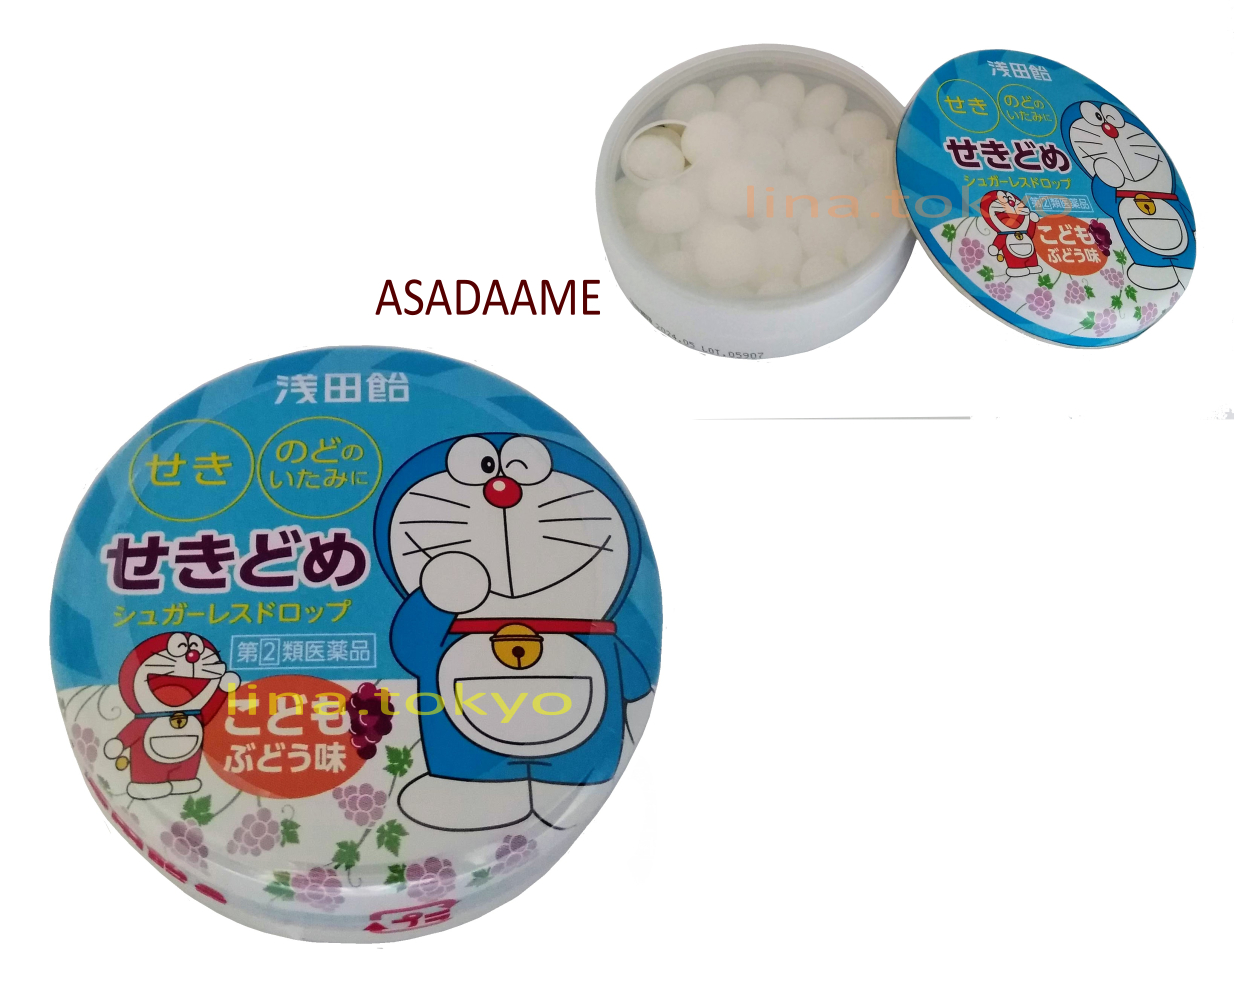 Thuốc trị ho nhật bản Asadaame 30 viên cho trẻ em từ 5 tuổi trở lên và người lớn, trị ho khan, ho đờm, viêm họng, đau họng dạng kẹo ngậm, hương nho (N30093) (Miễn phí giao hàng)